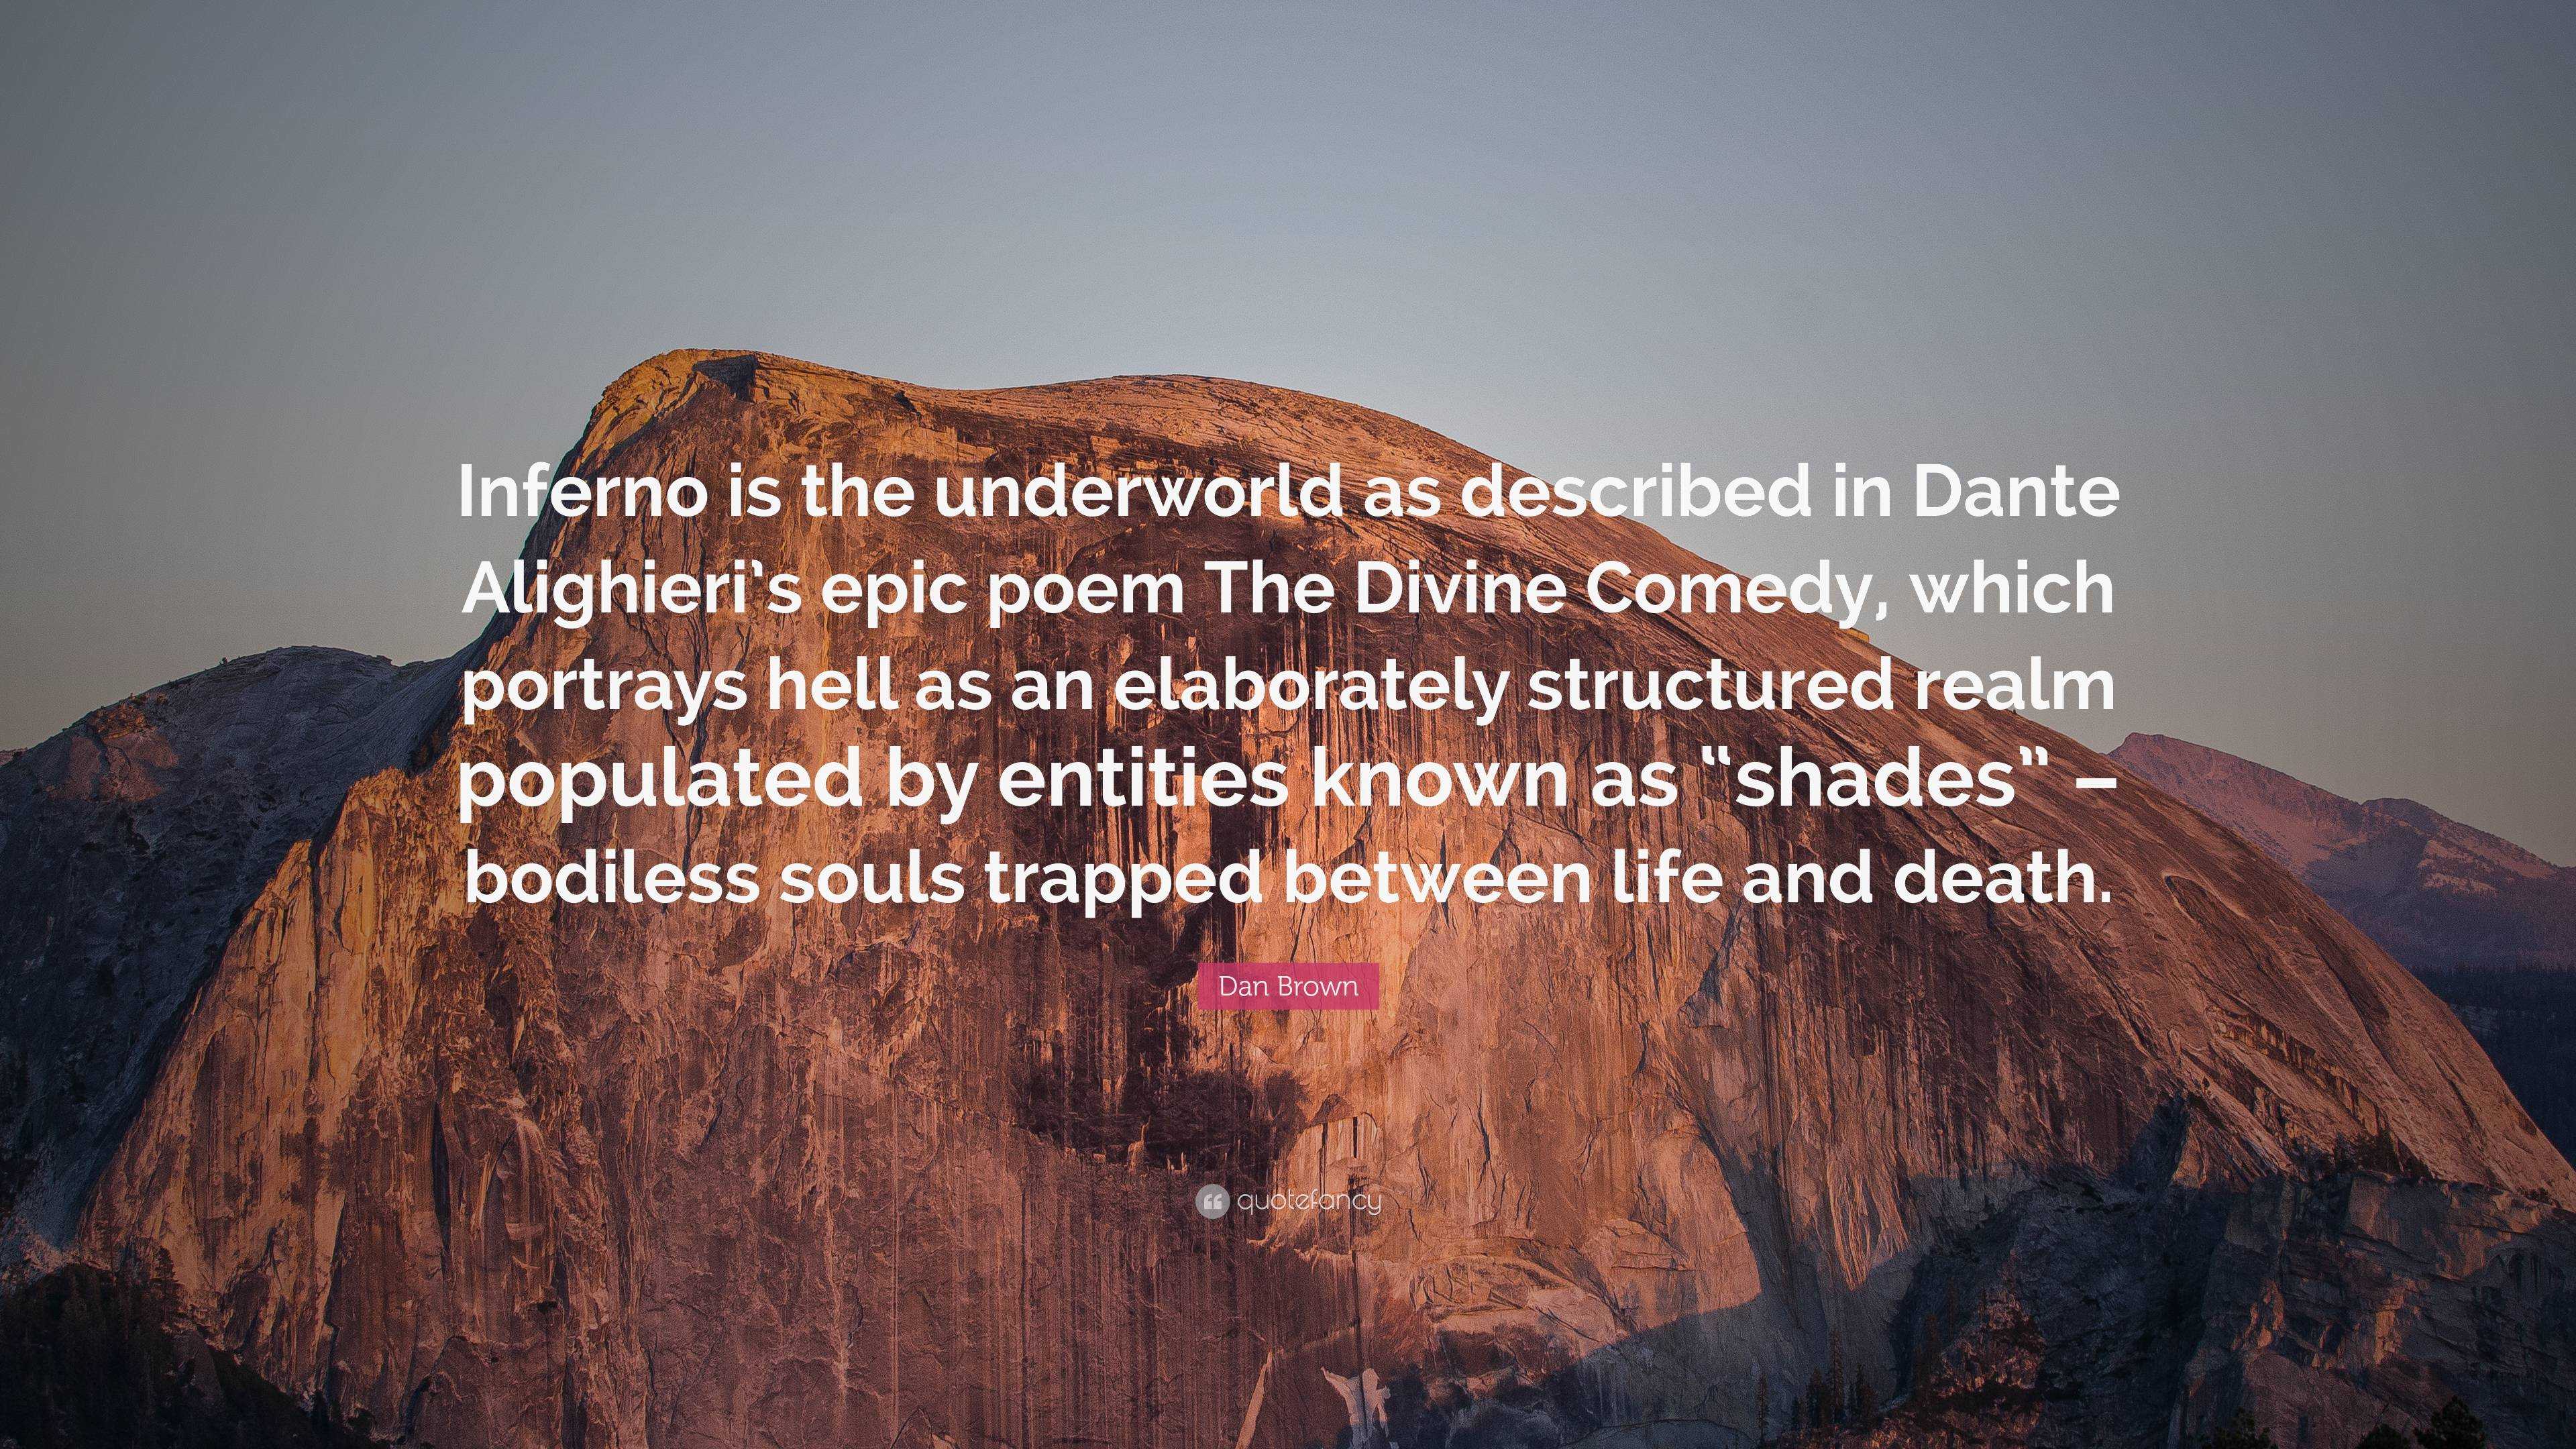 Inferno de Dan e Inferno de Dante